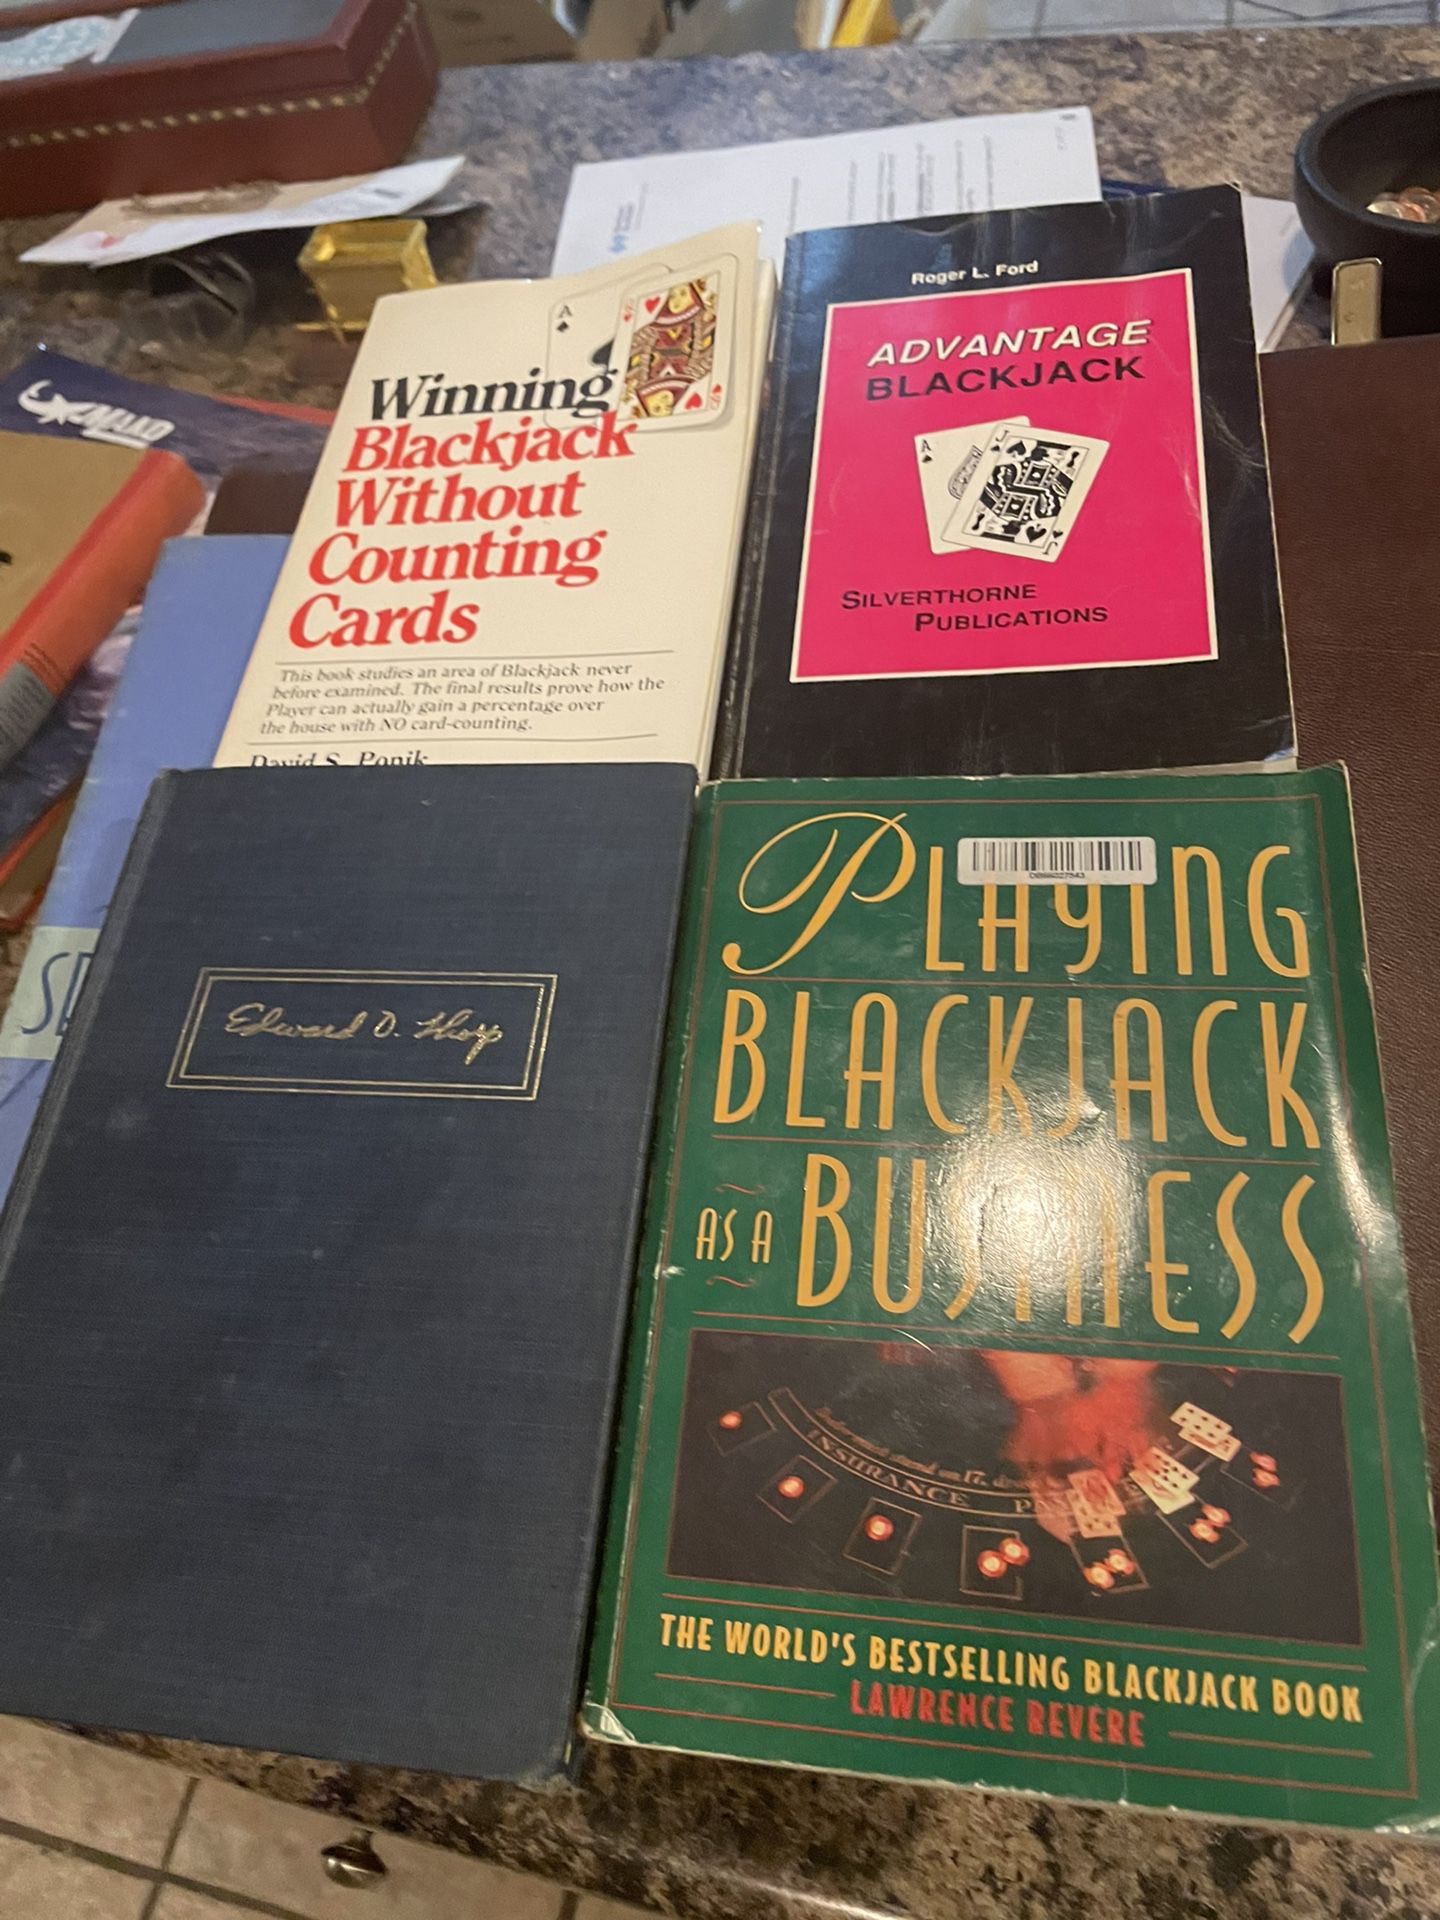 Casino Blackjack Set Of Books